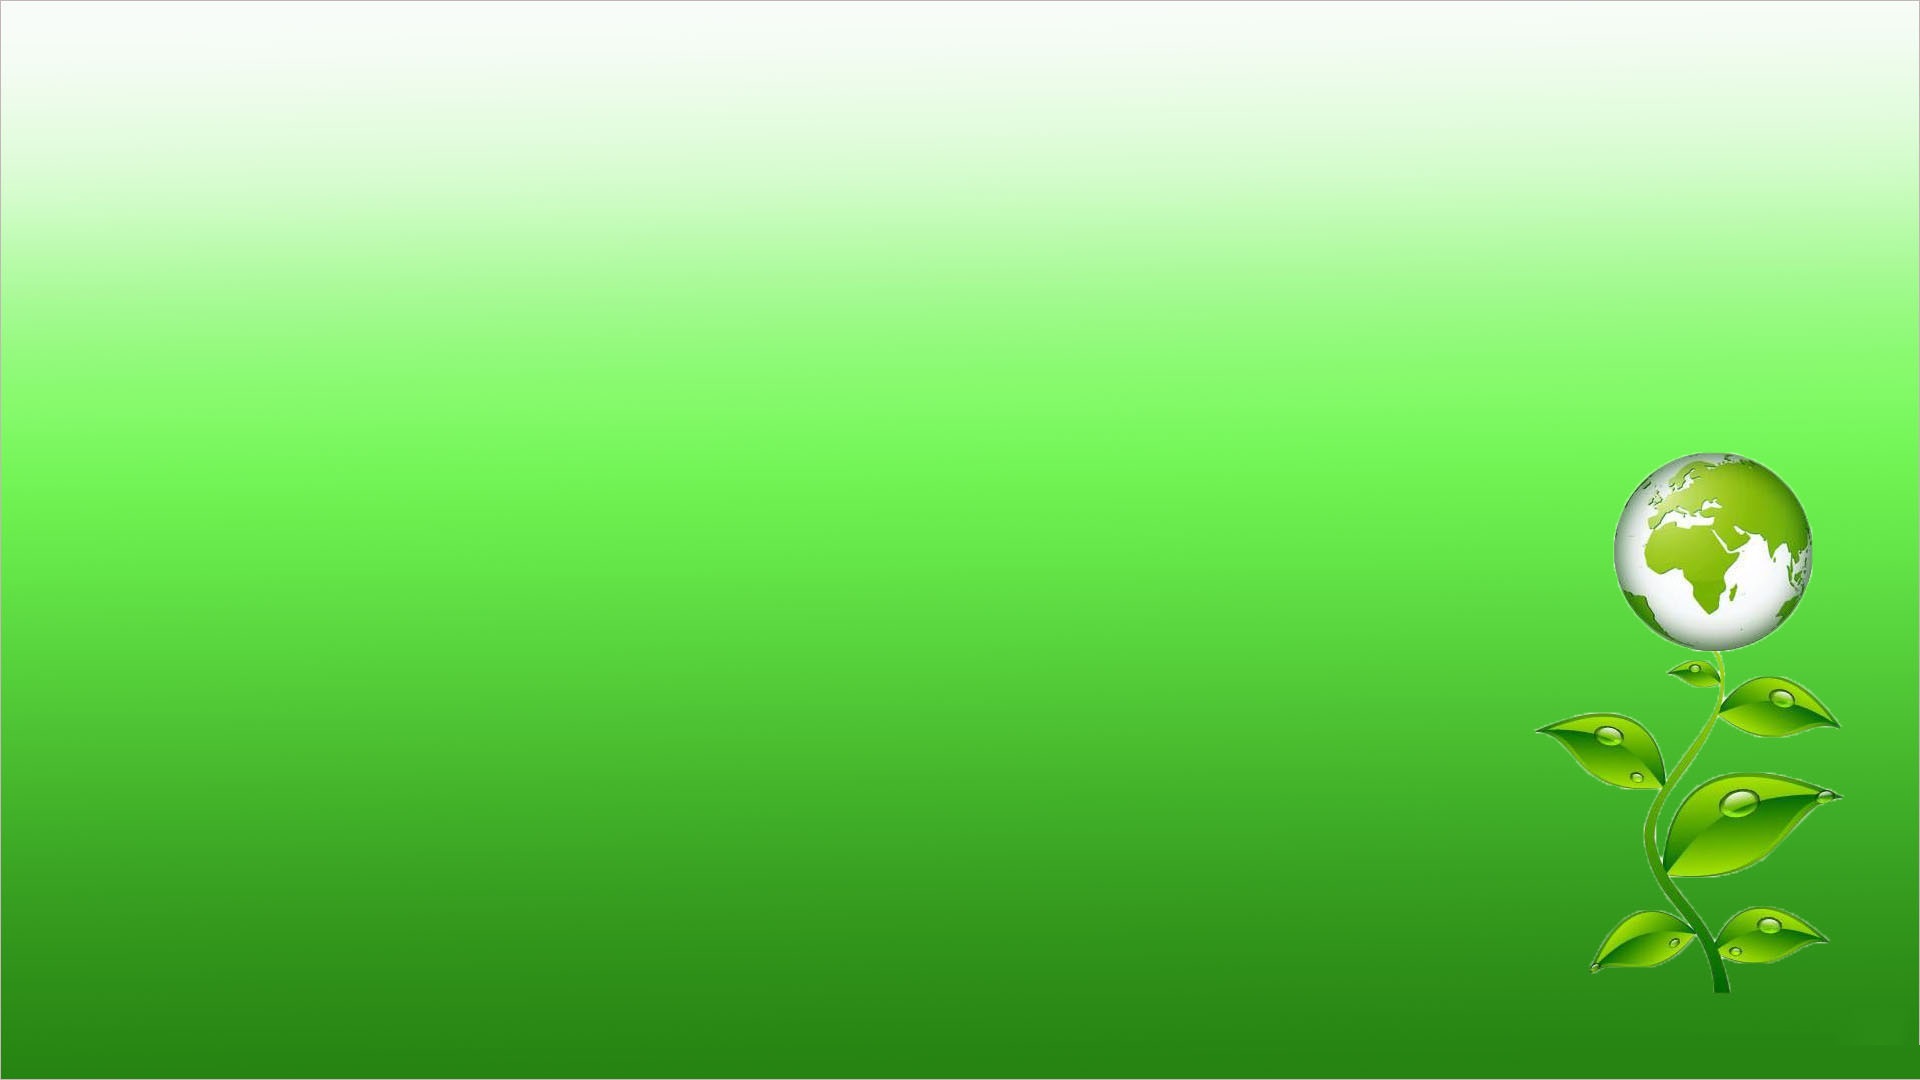 Hình nền máy tính độc đáo với hình ảnh màu xanh ngọc lam và màu xanh lá cây, sẽ làm tăng tính thẩm mỹ cho giao diện máy tính bạn. Hình nền này cực kỳ phù hợp cho PowerPoint và sẽ giúp trình bày bài thuyết trình của bạn trở nên độc đáo và thu hút hơn.